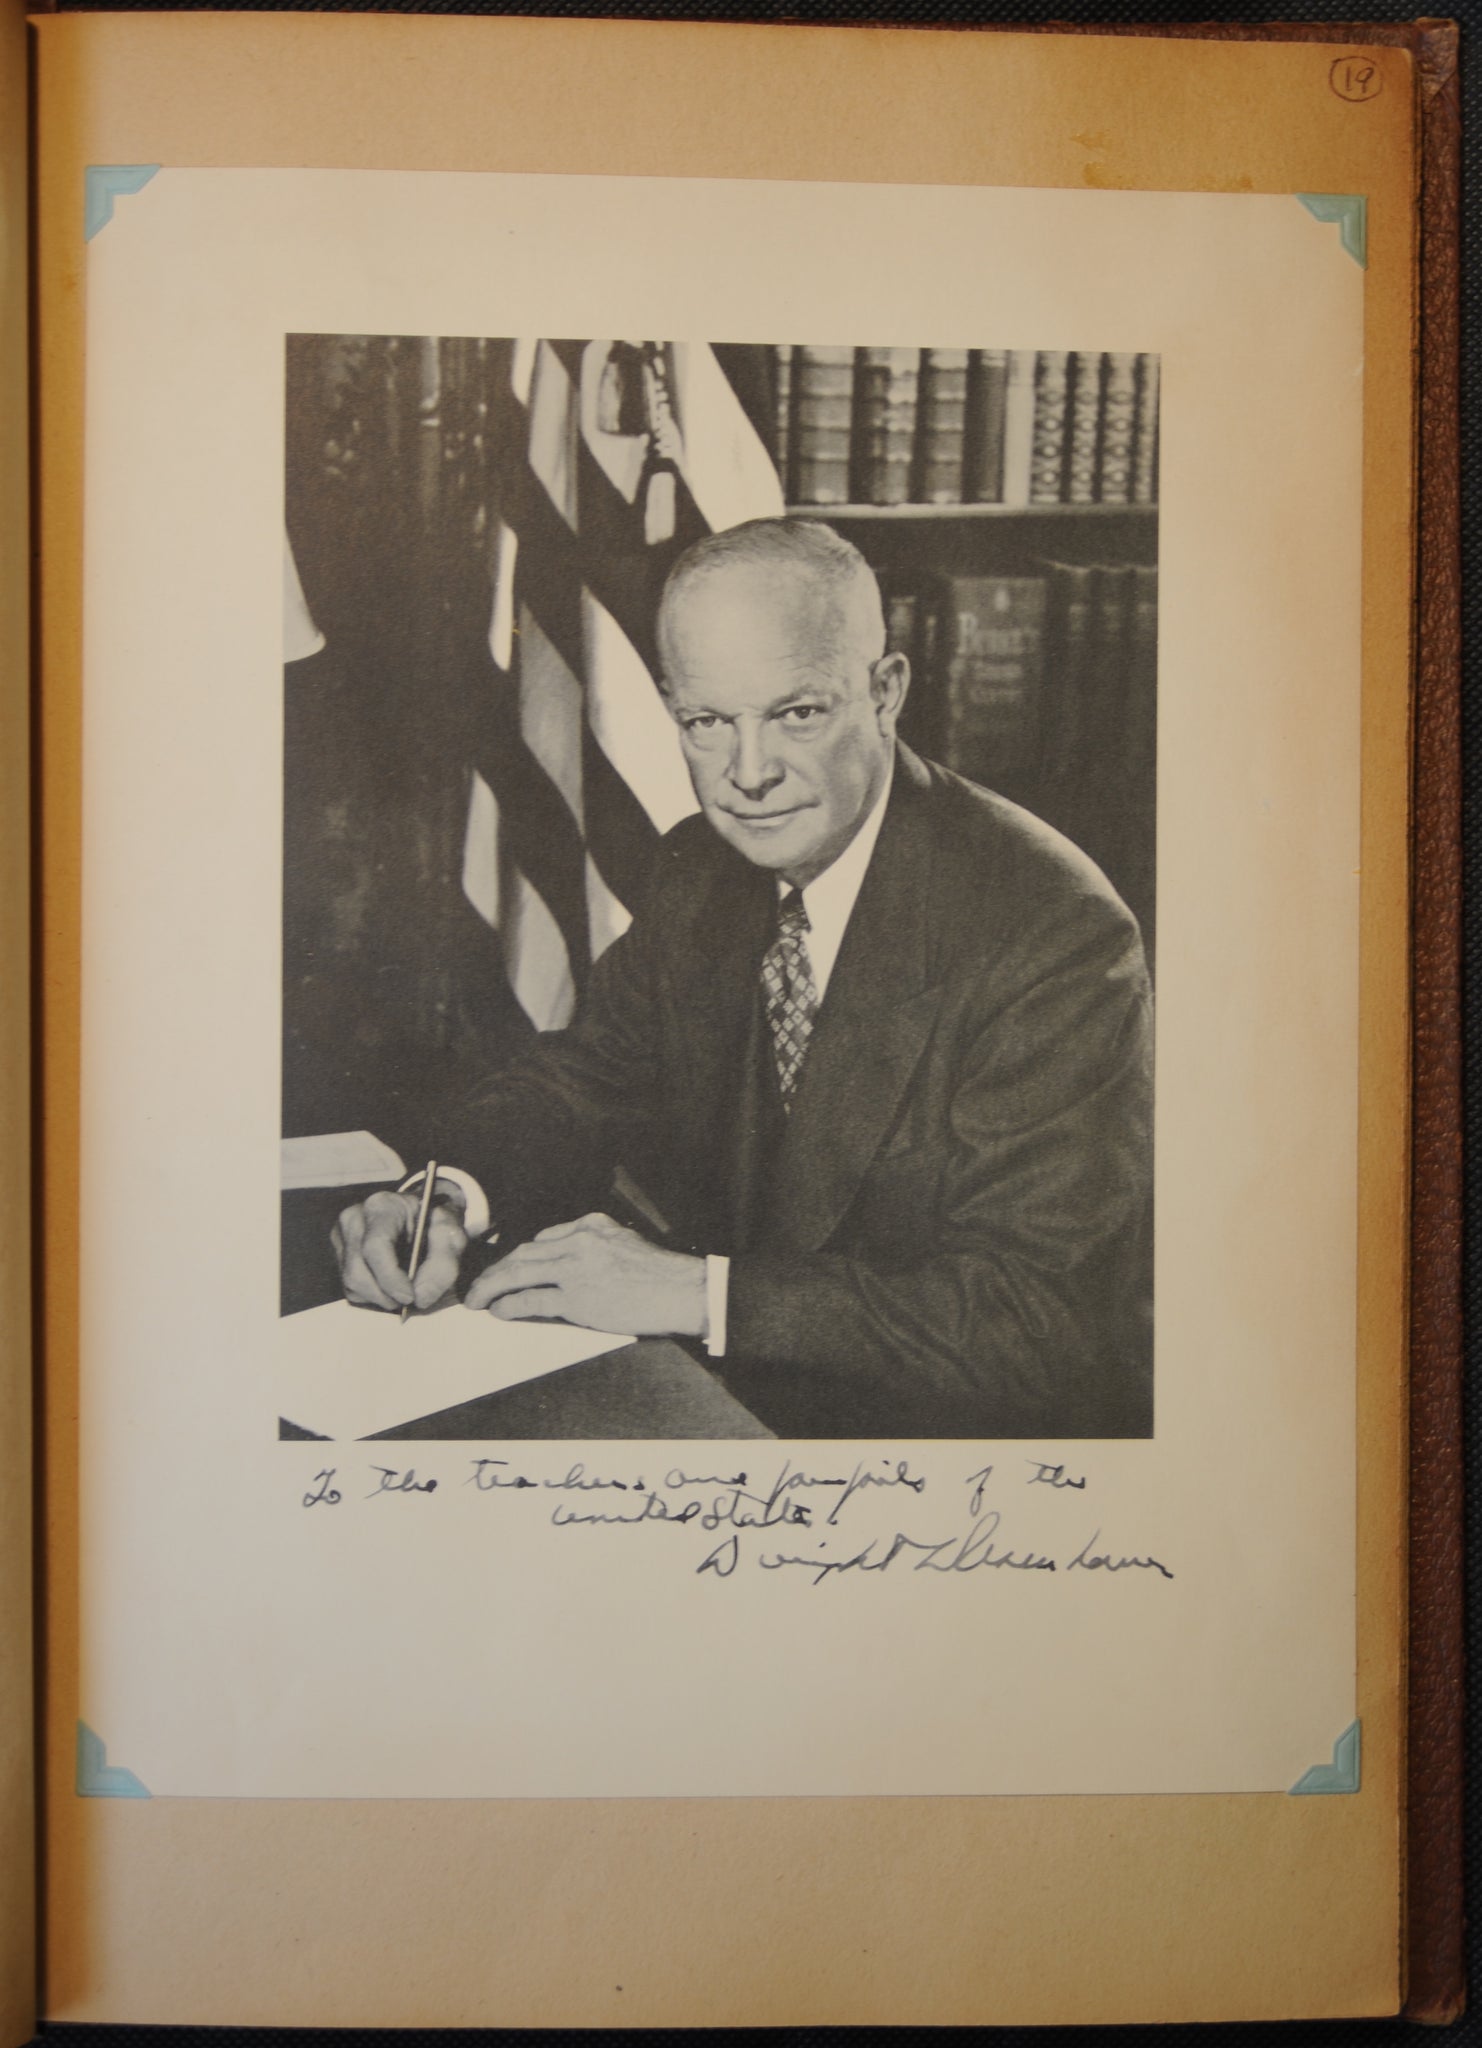 Entry #19: President Eisenhower